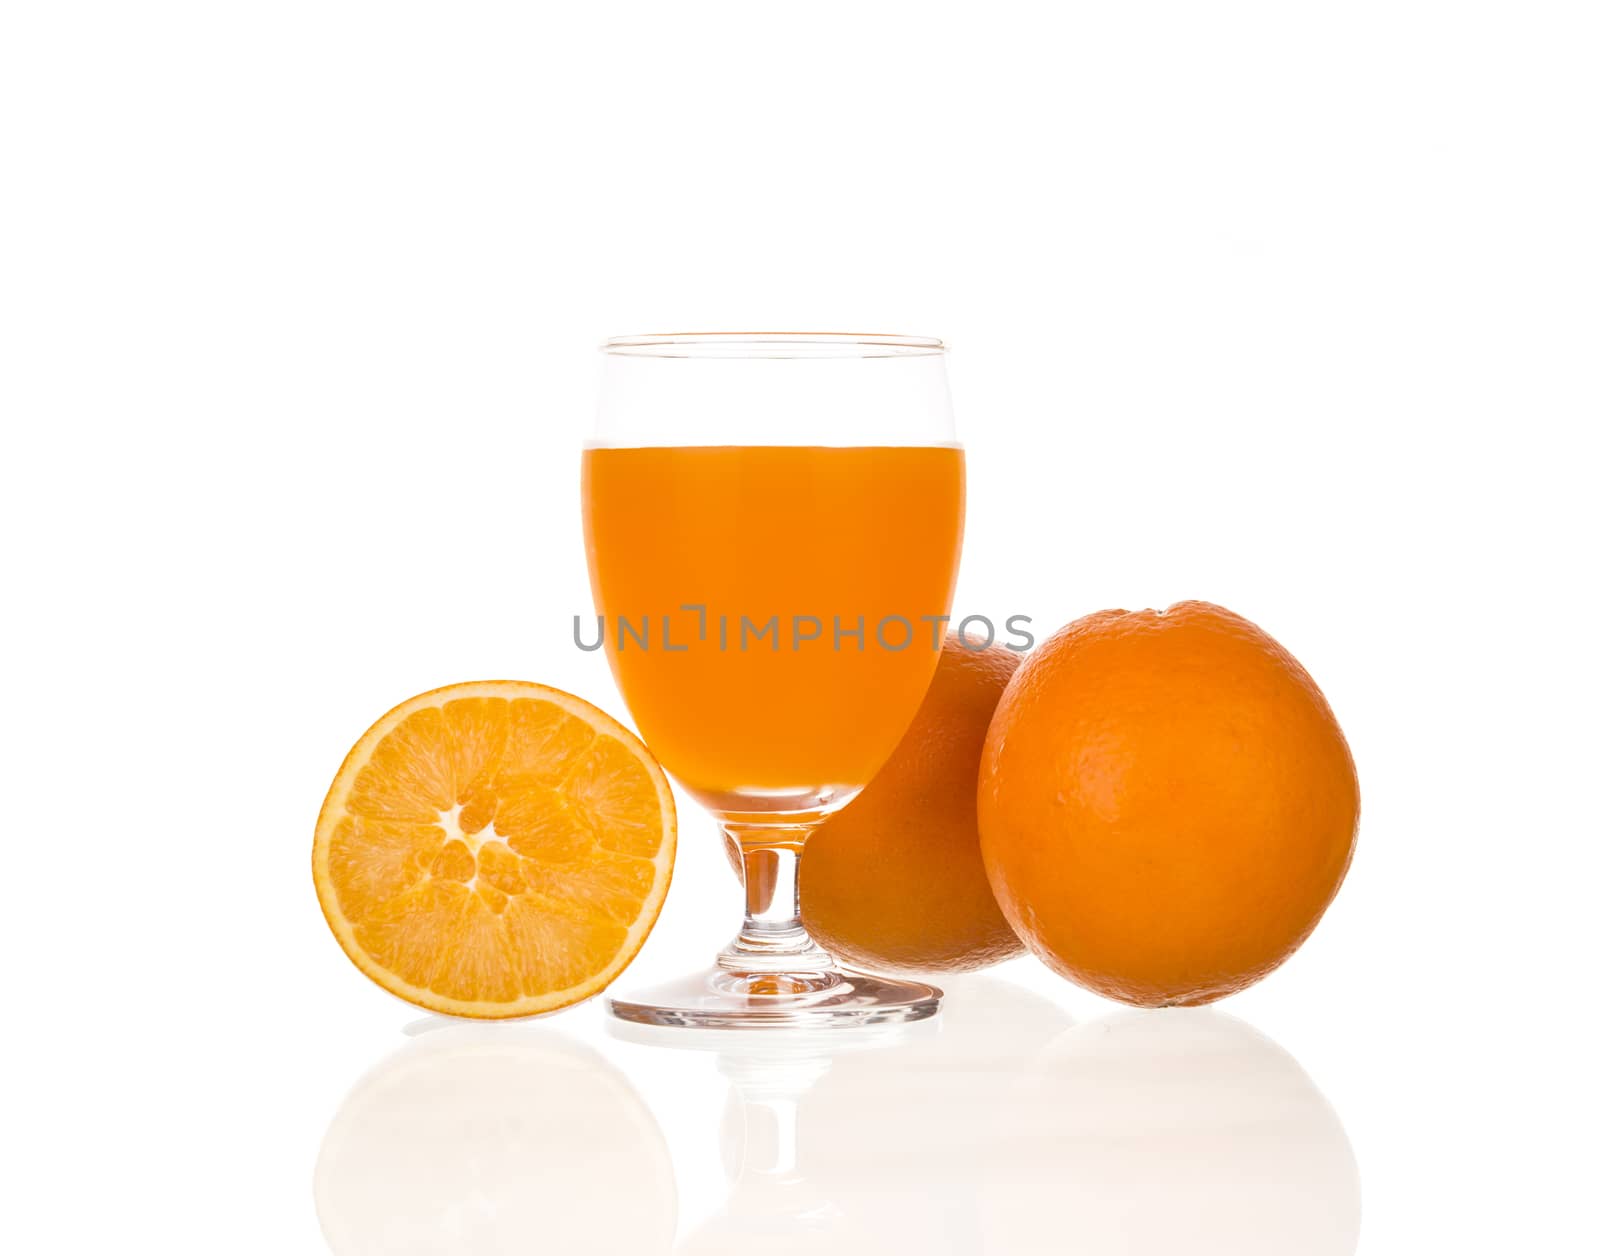 Orange juice isolated on a white background.